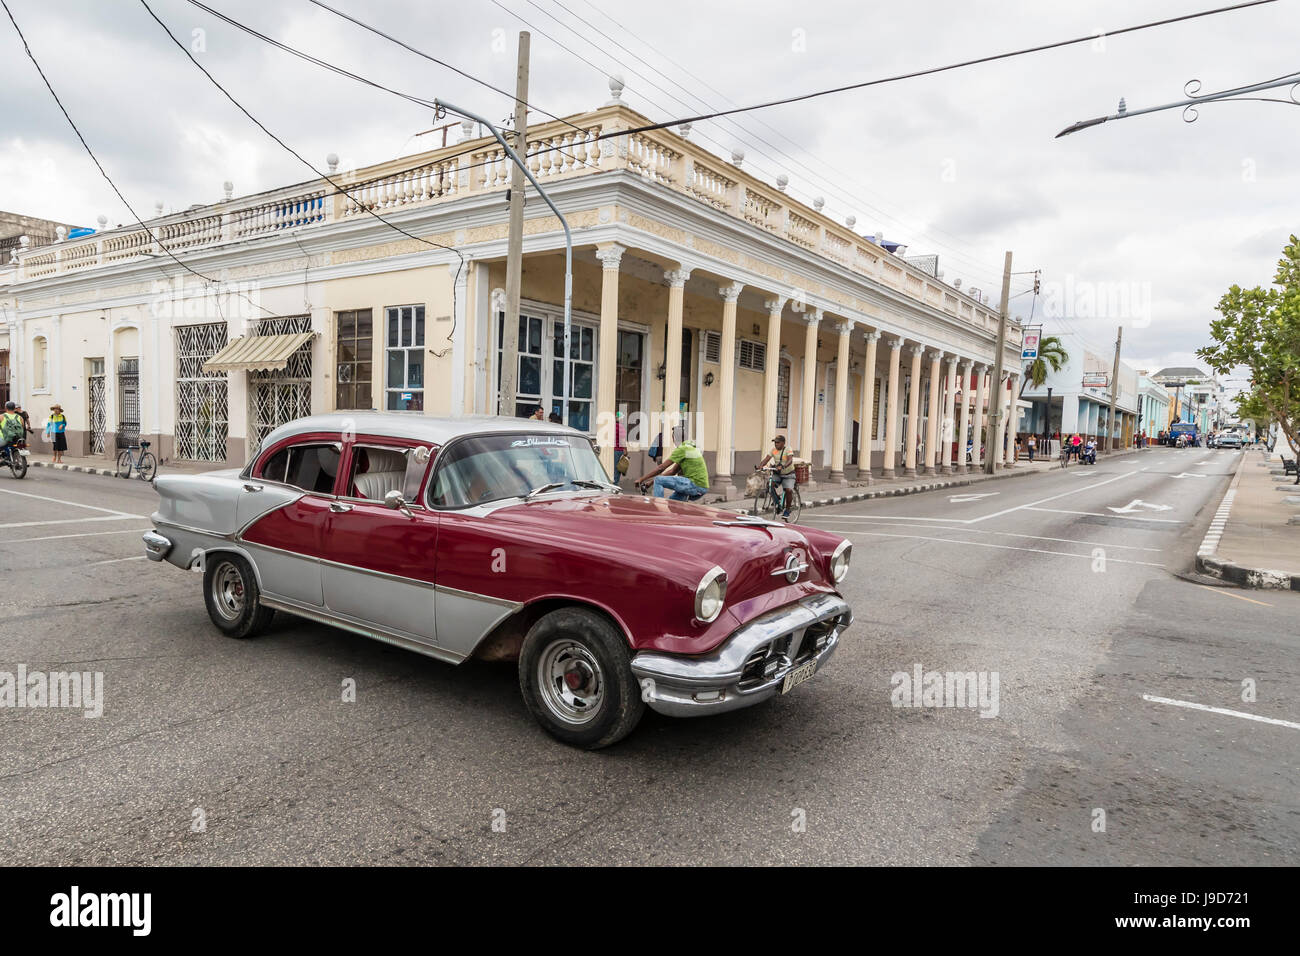 Classic 1950 Oldsmobile taxi, connu localement comme almendrones dans la ville de Cienfuegos, Cuba, Antilles, Caraïbes Banque D'Images